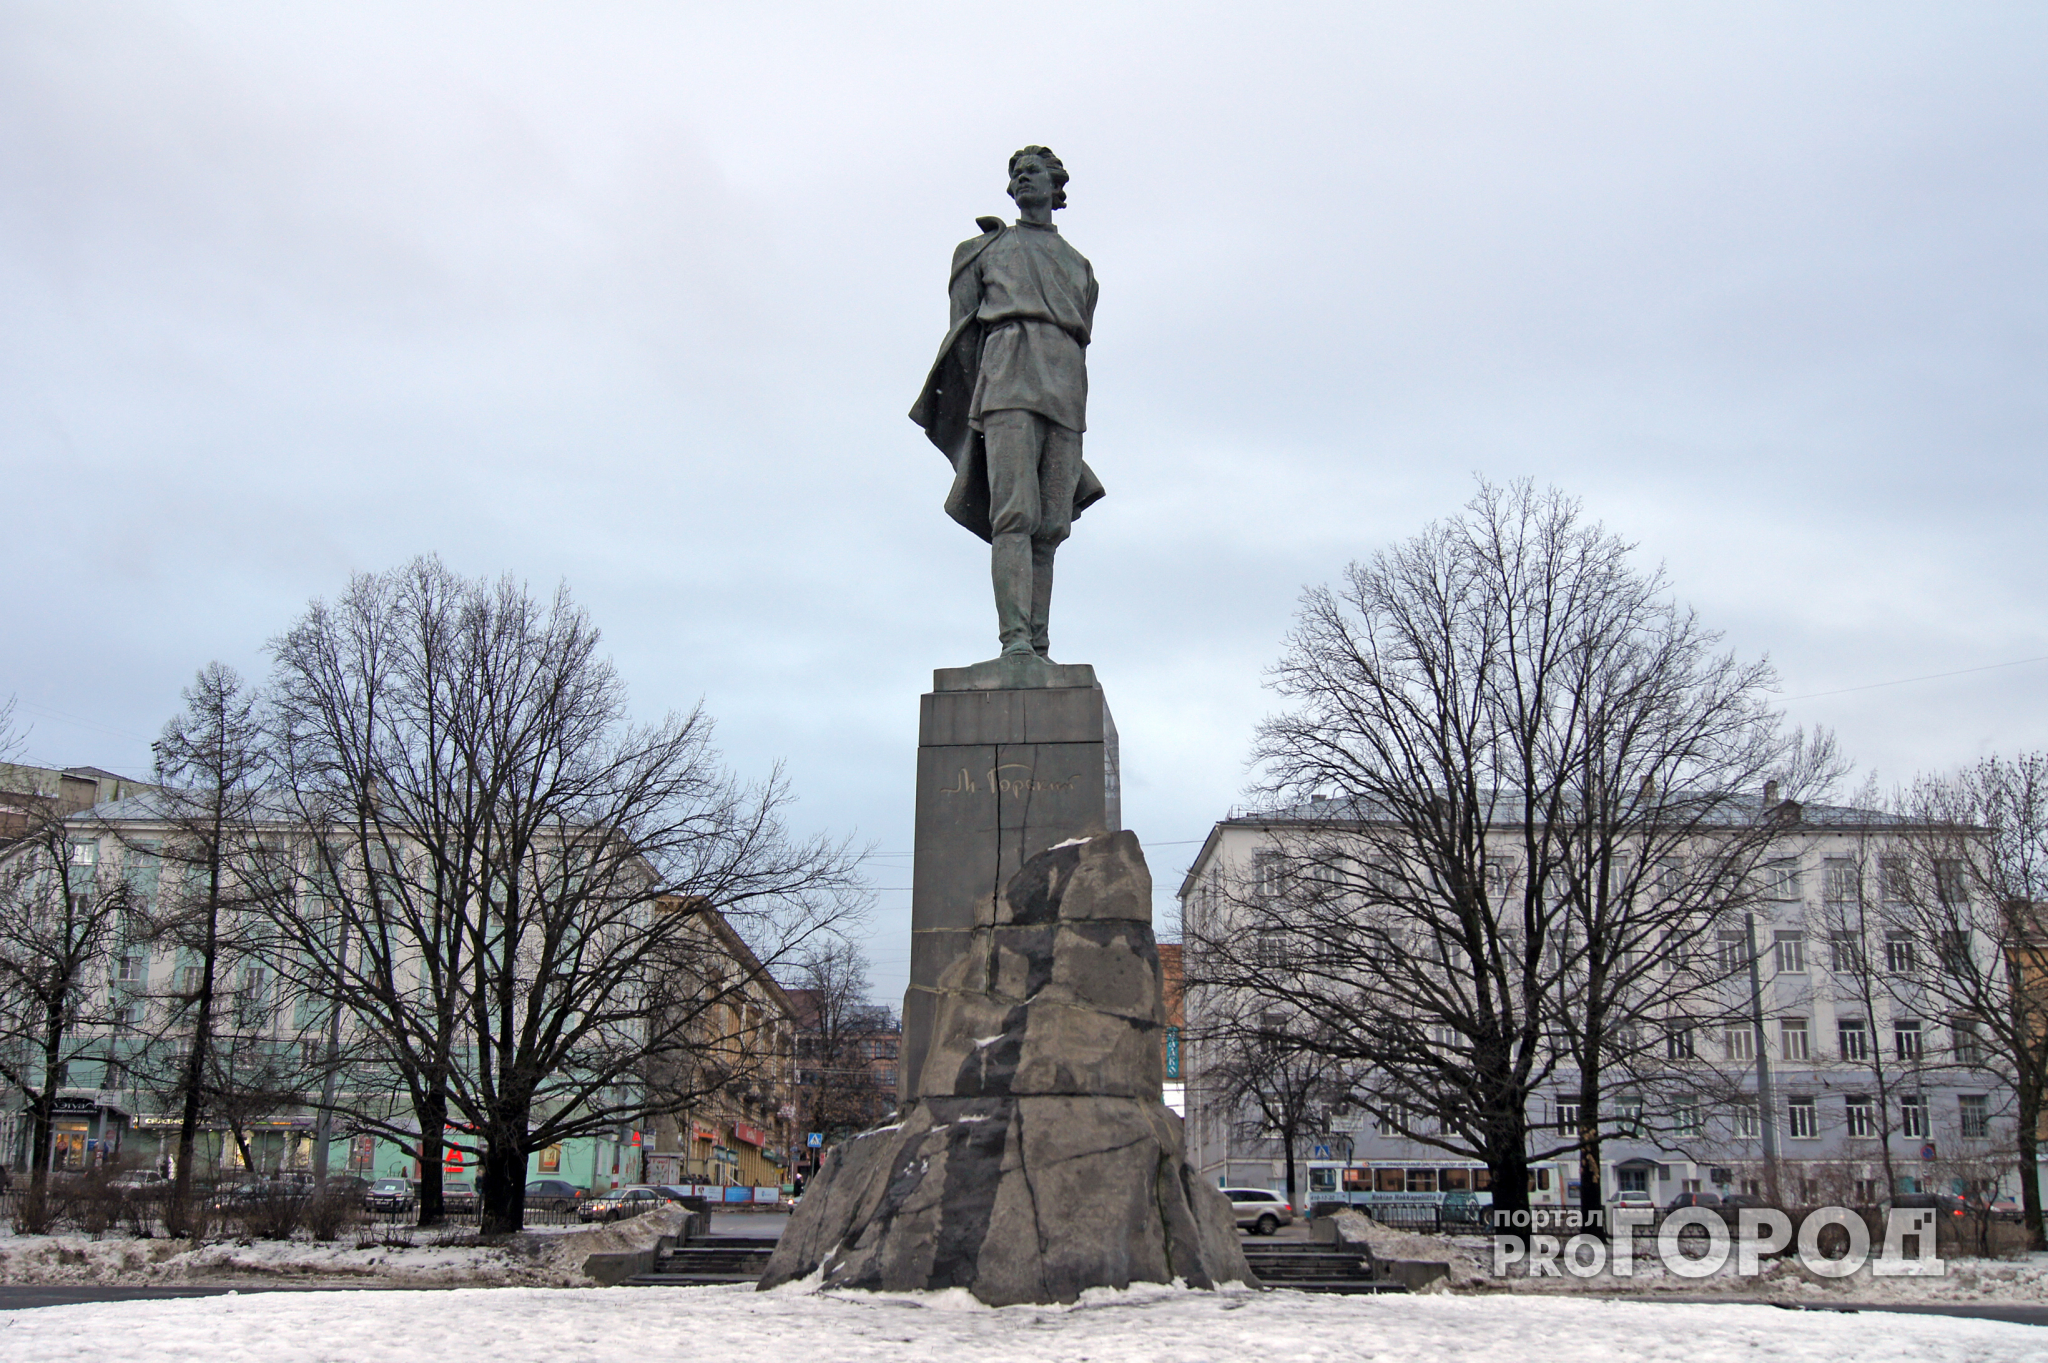 Конкурс по реставрации памятника Горькому признан несостоявшимся